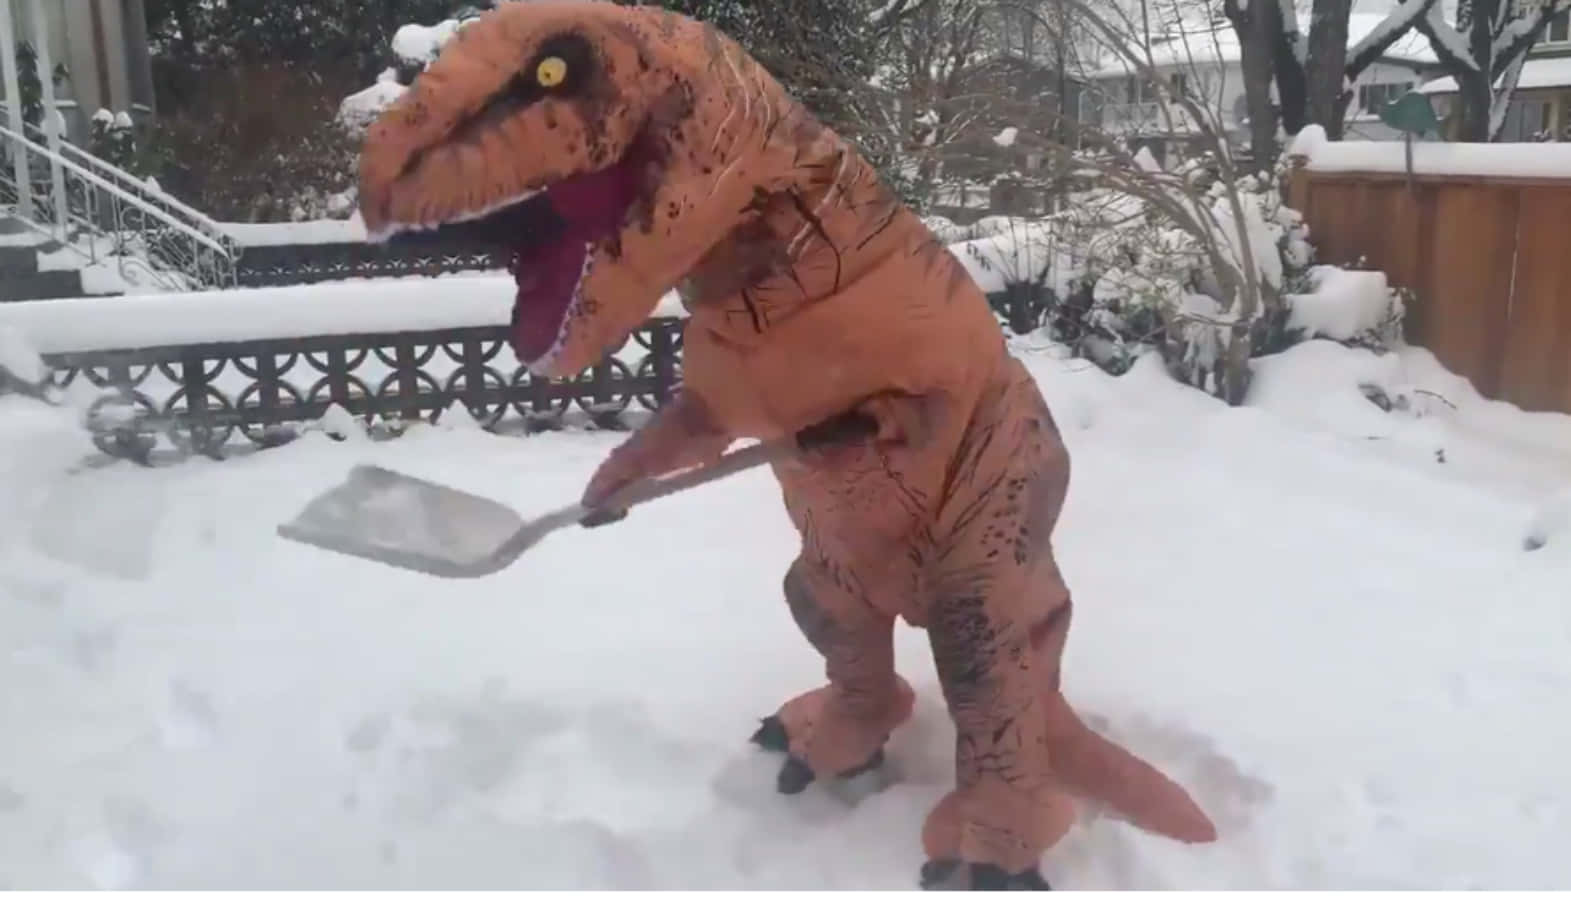 Divertidaimagen De Un T-rex Disfrazado De Nieve Y Quitando La Nieve.